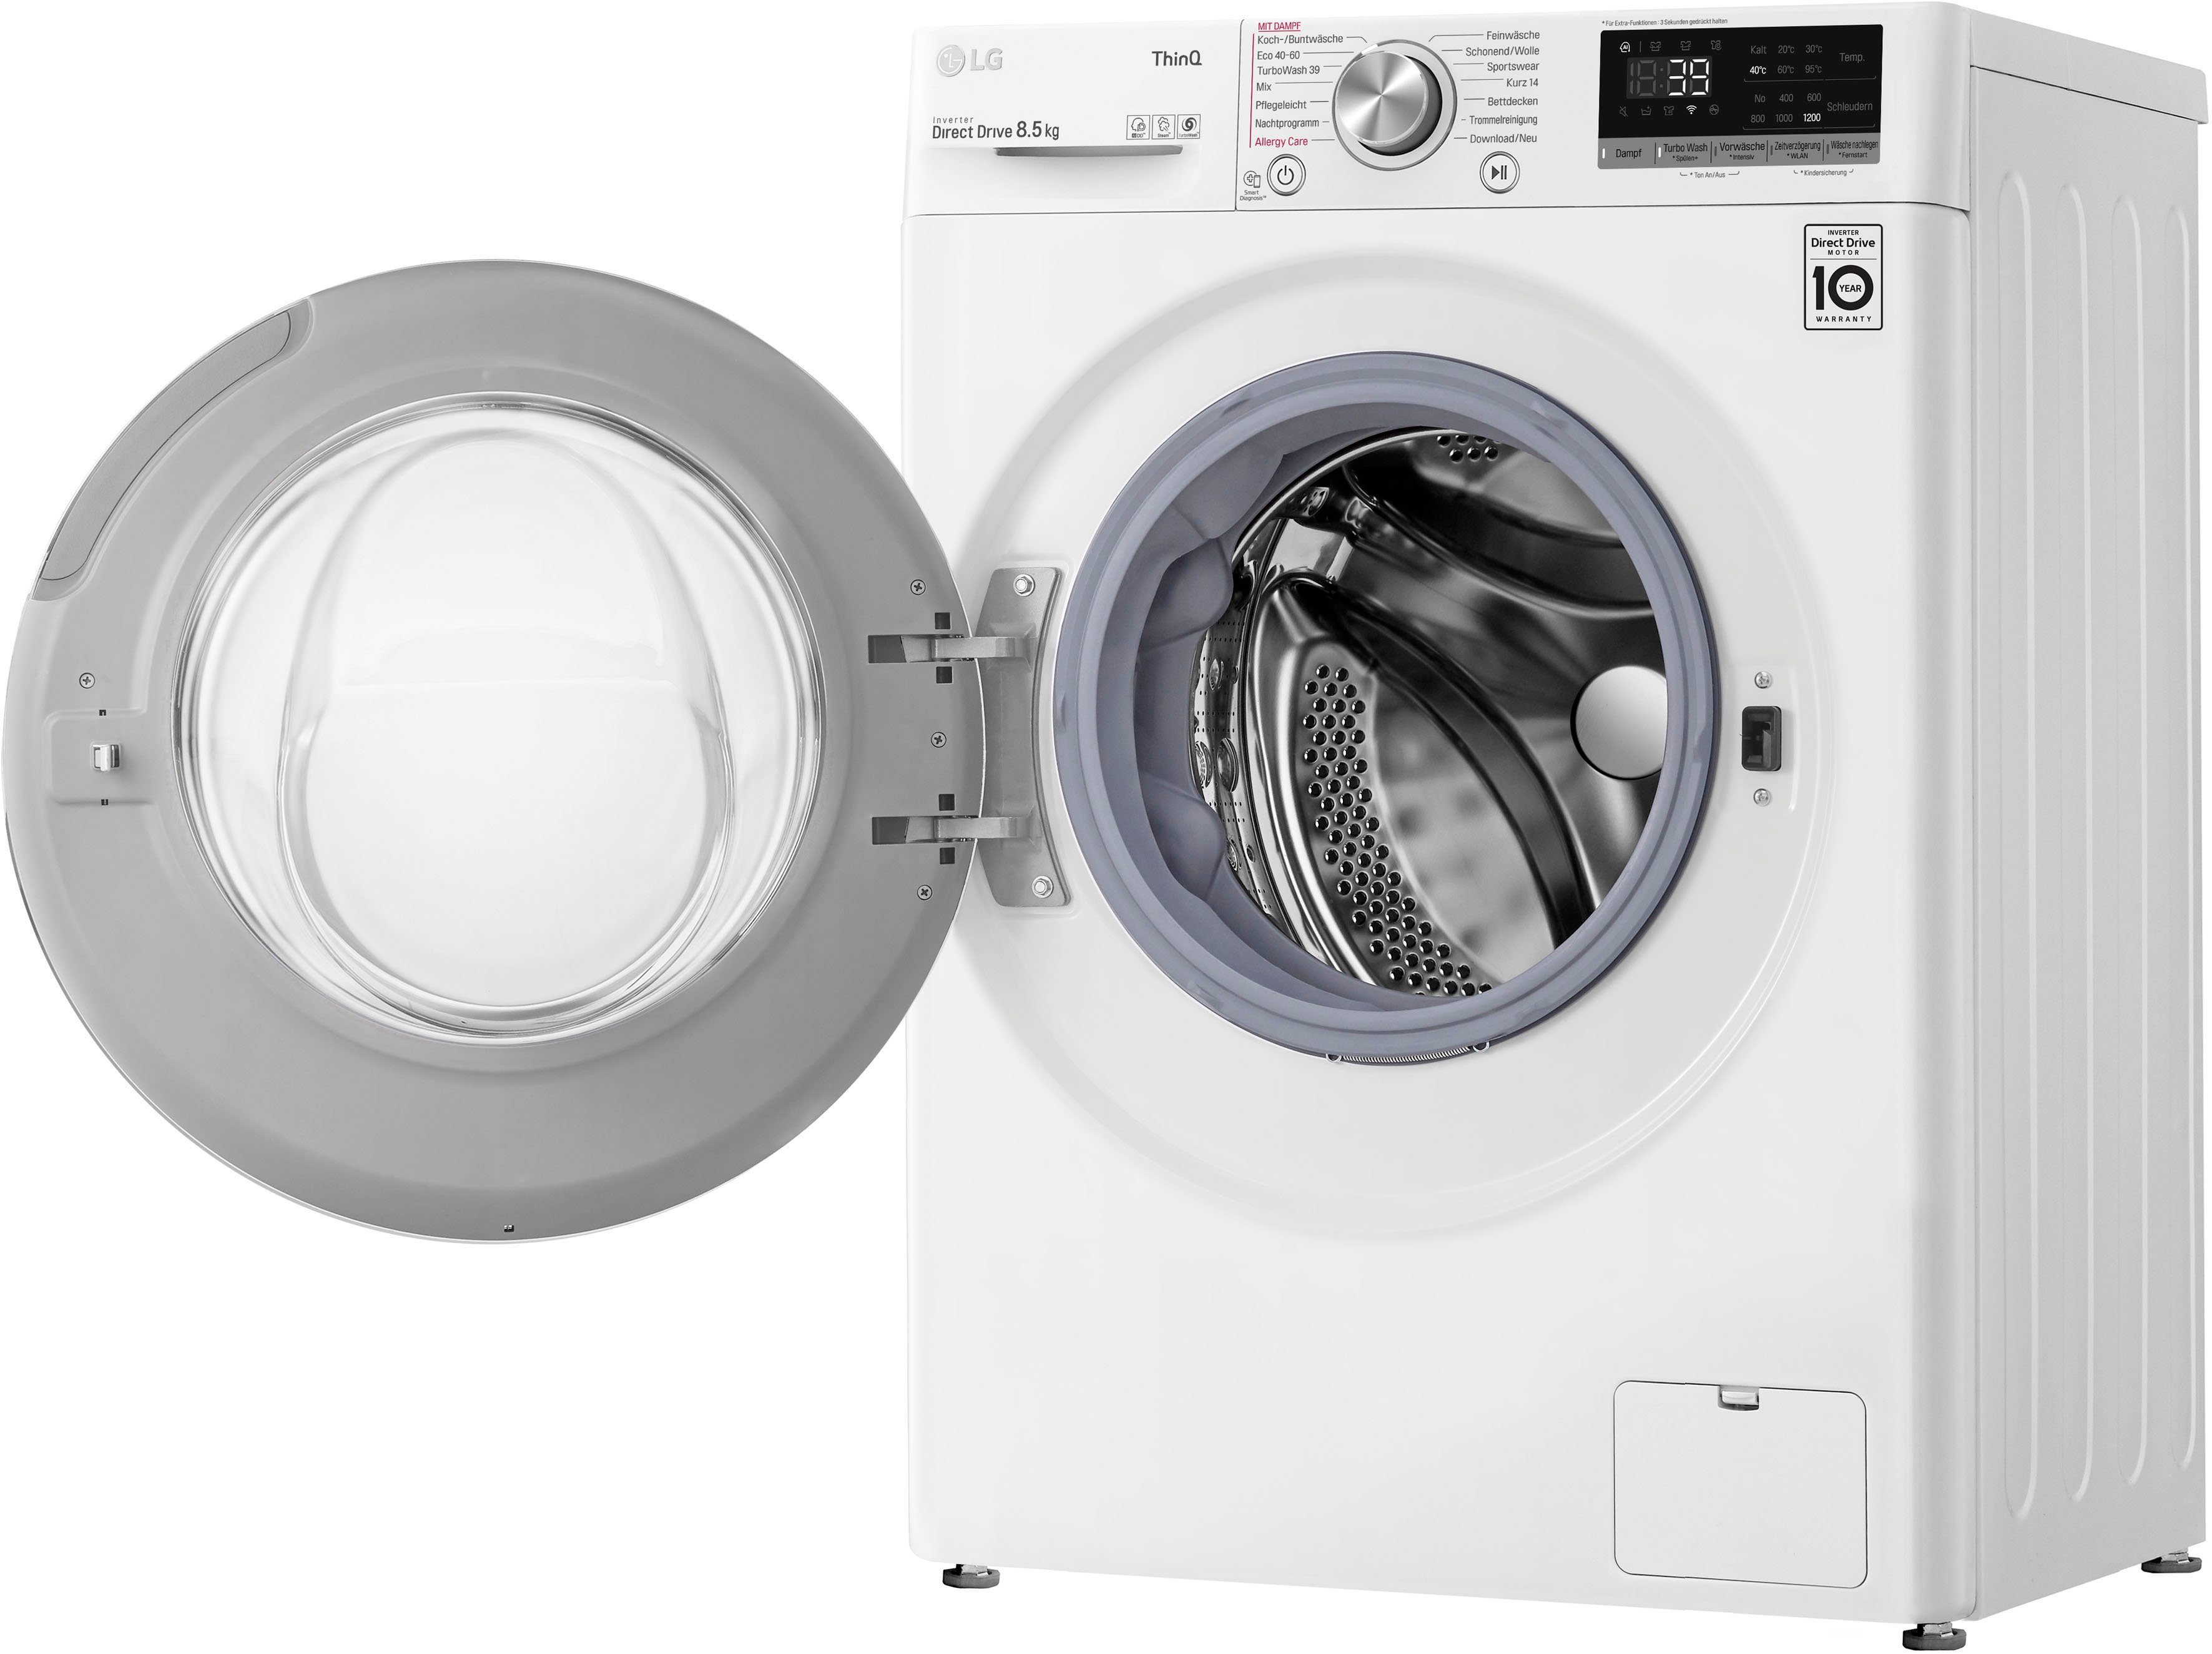 Waschen 39 in LG Minuten - TurboWash® U/min, nur 1200 F2V7SLIM8E, kg, Waschmaschine 8,5